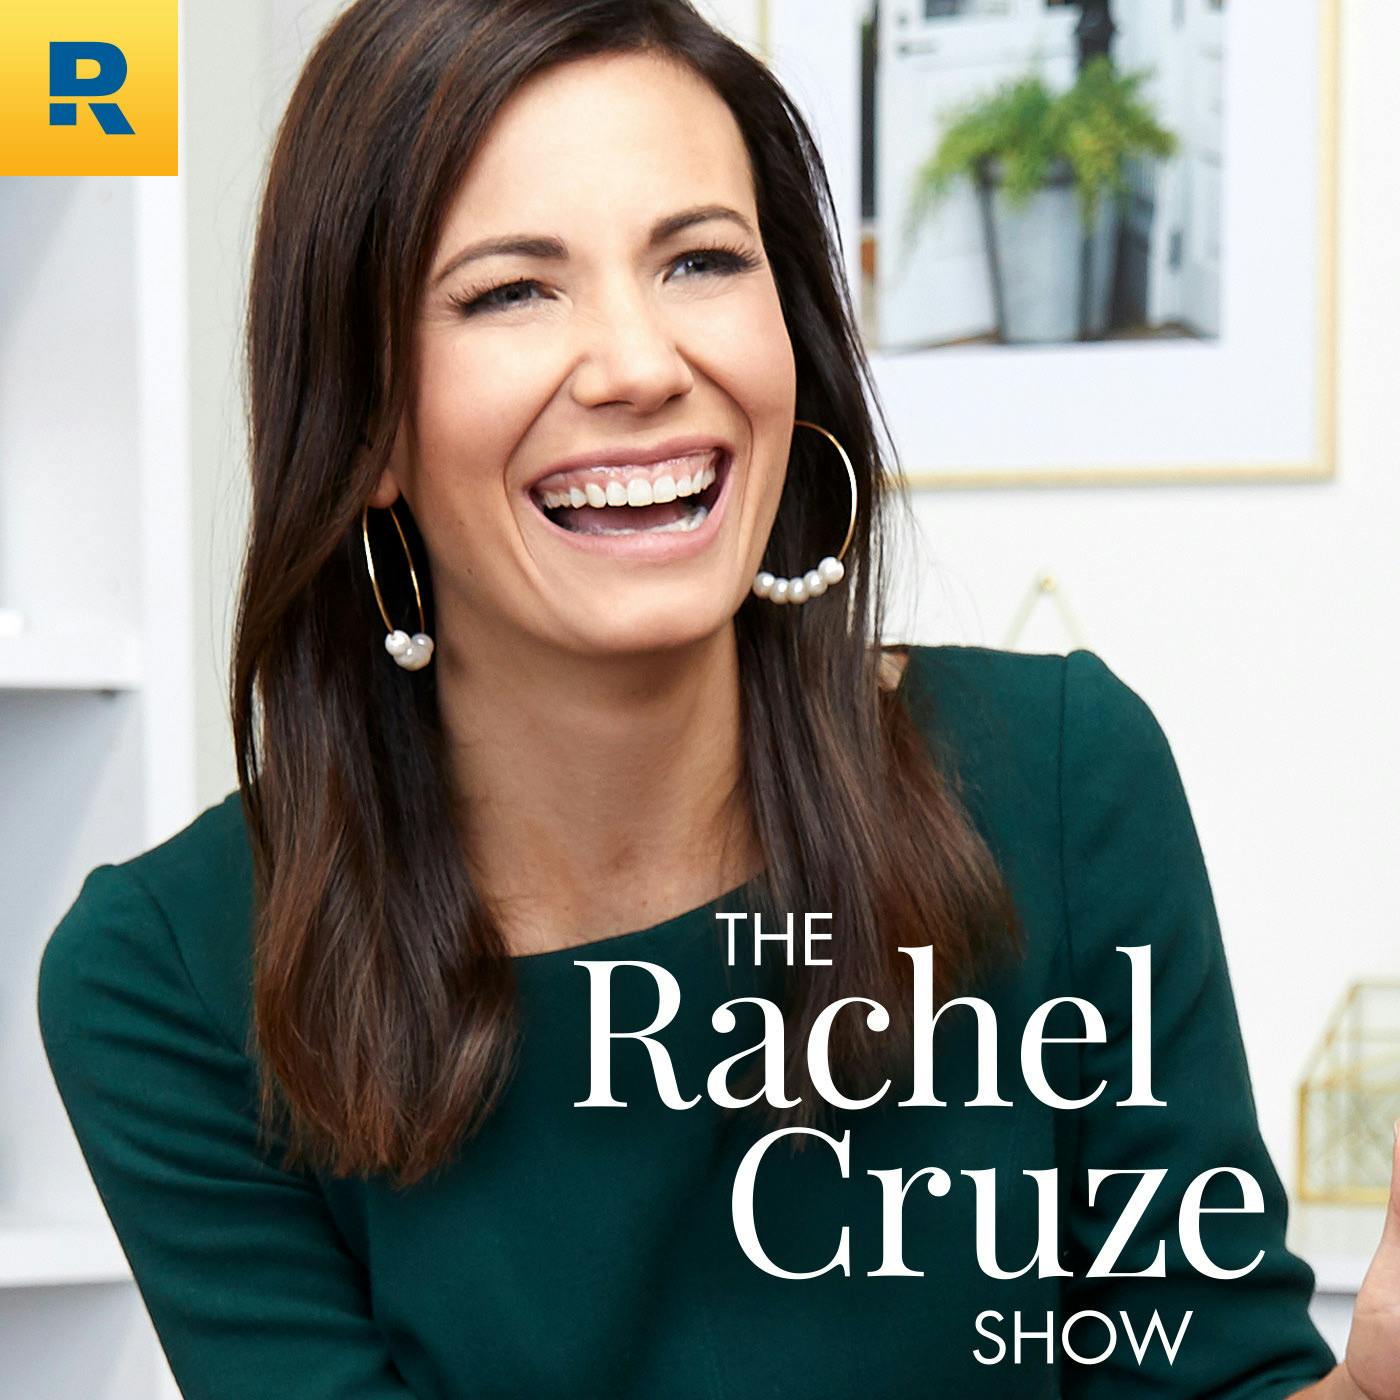 The Rachel Cruze Show:Eric Cieslewicz